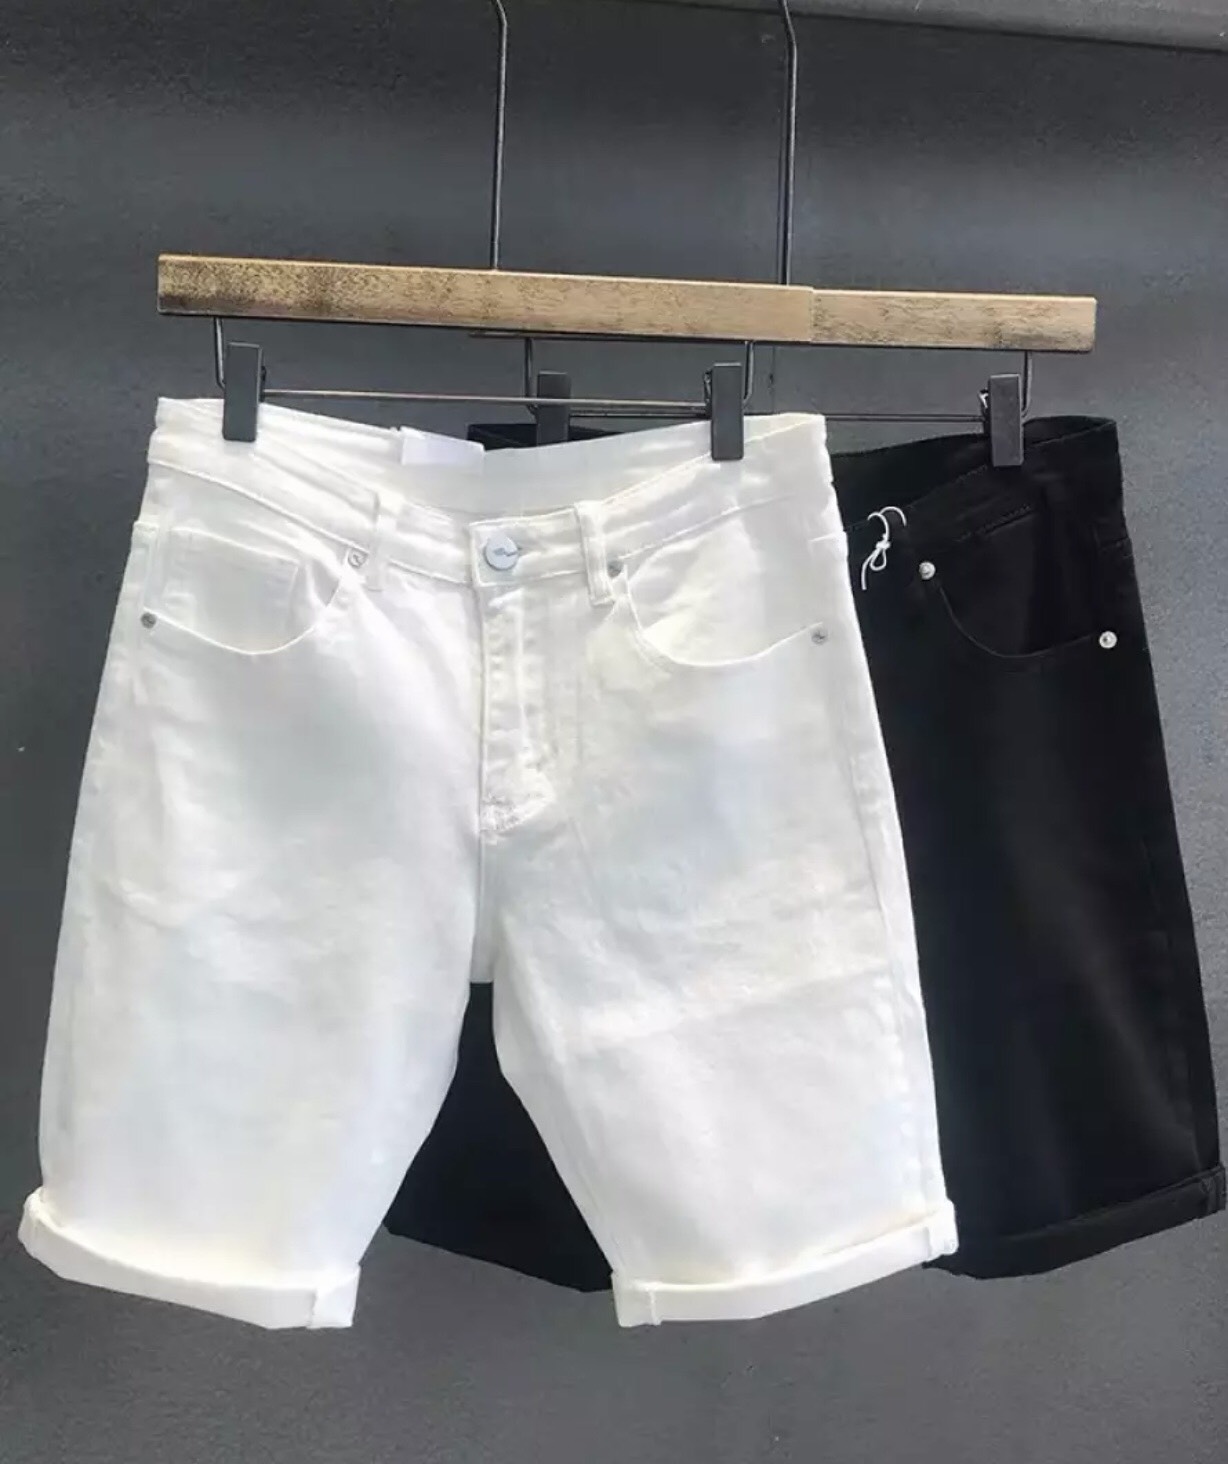 Quần short jean nam phối hai màu trắng đen trơn  chất bò vải dày co dãn mẫu mới nhất cao cấp